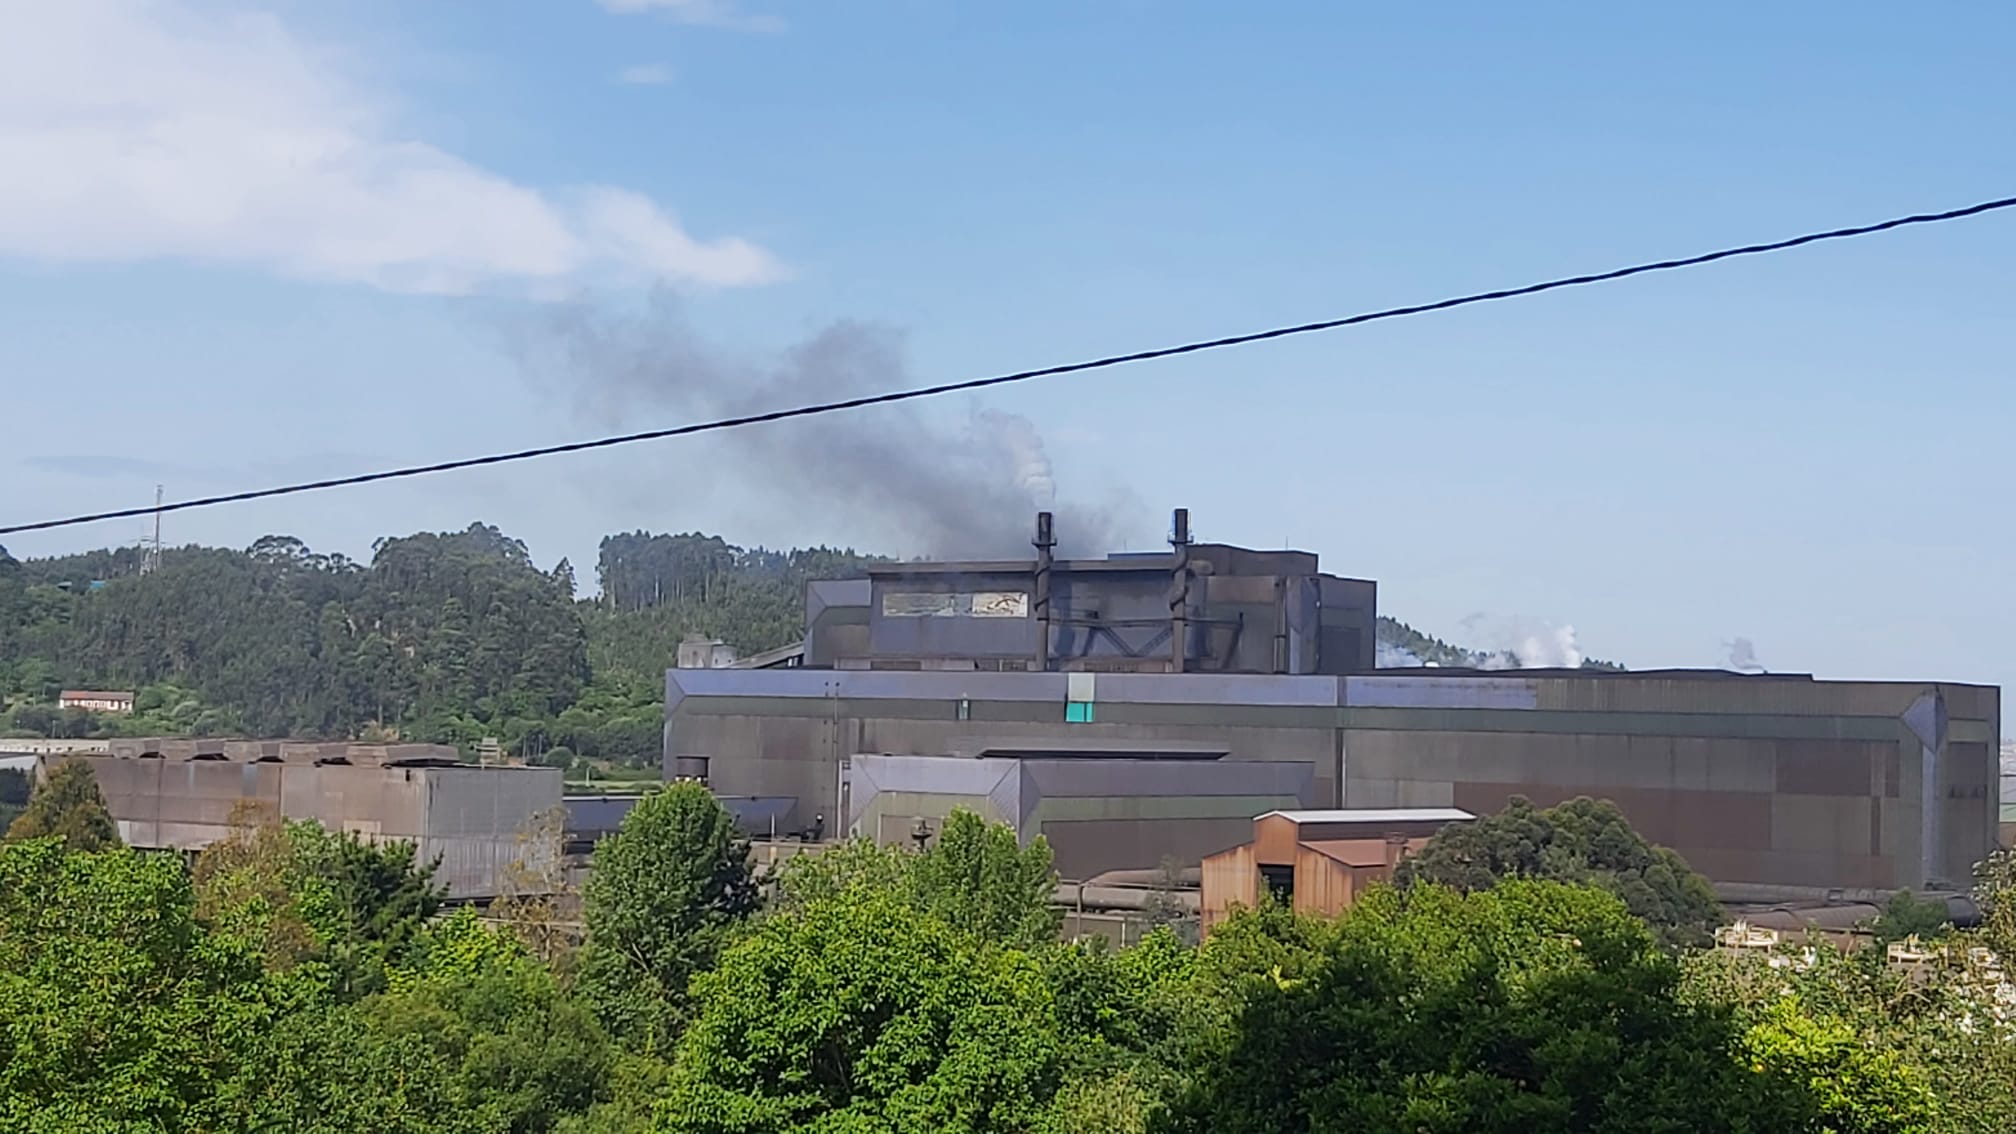 Nuevas emisiones ArcelorMittal en Carreño